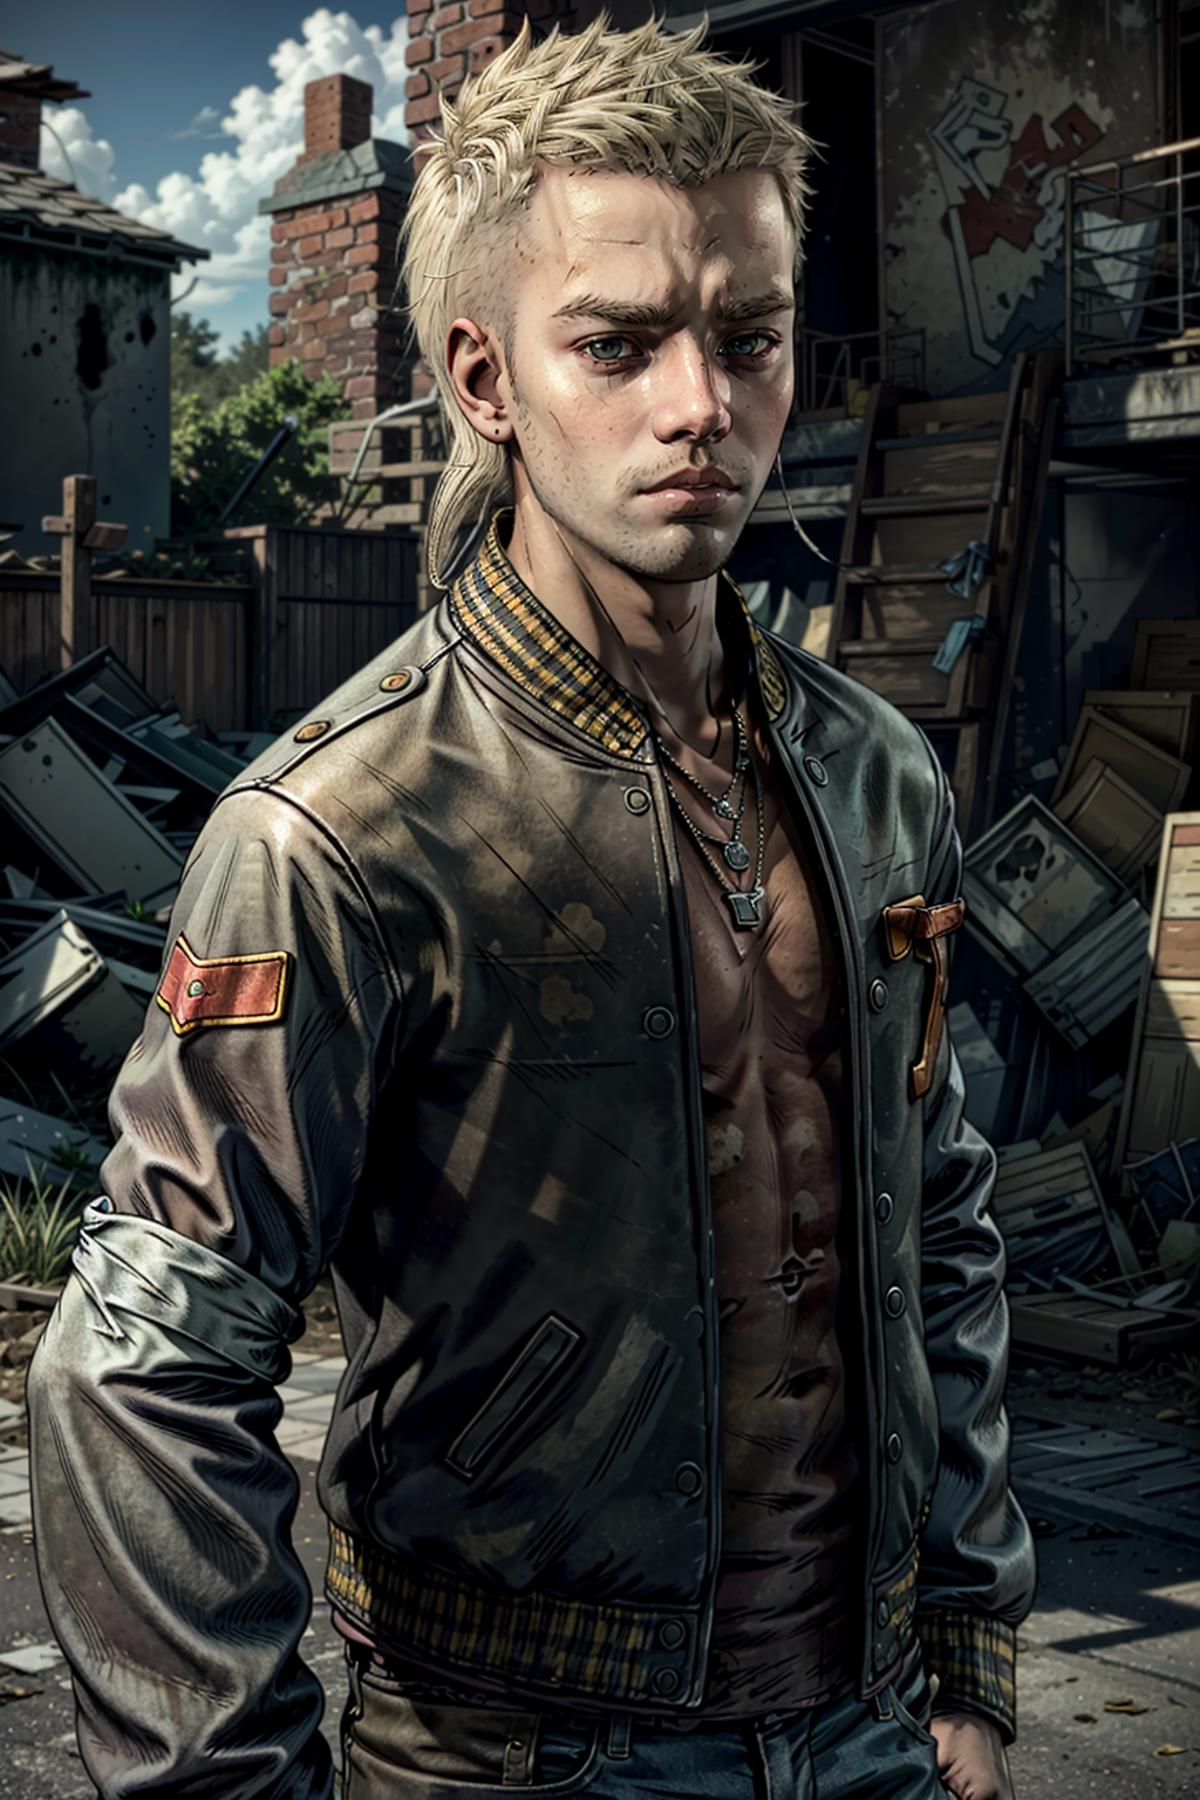 Marlon from The Walking Dead: The Final Season image by BloodRedKittie